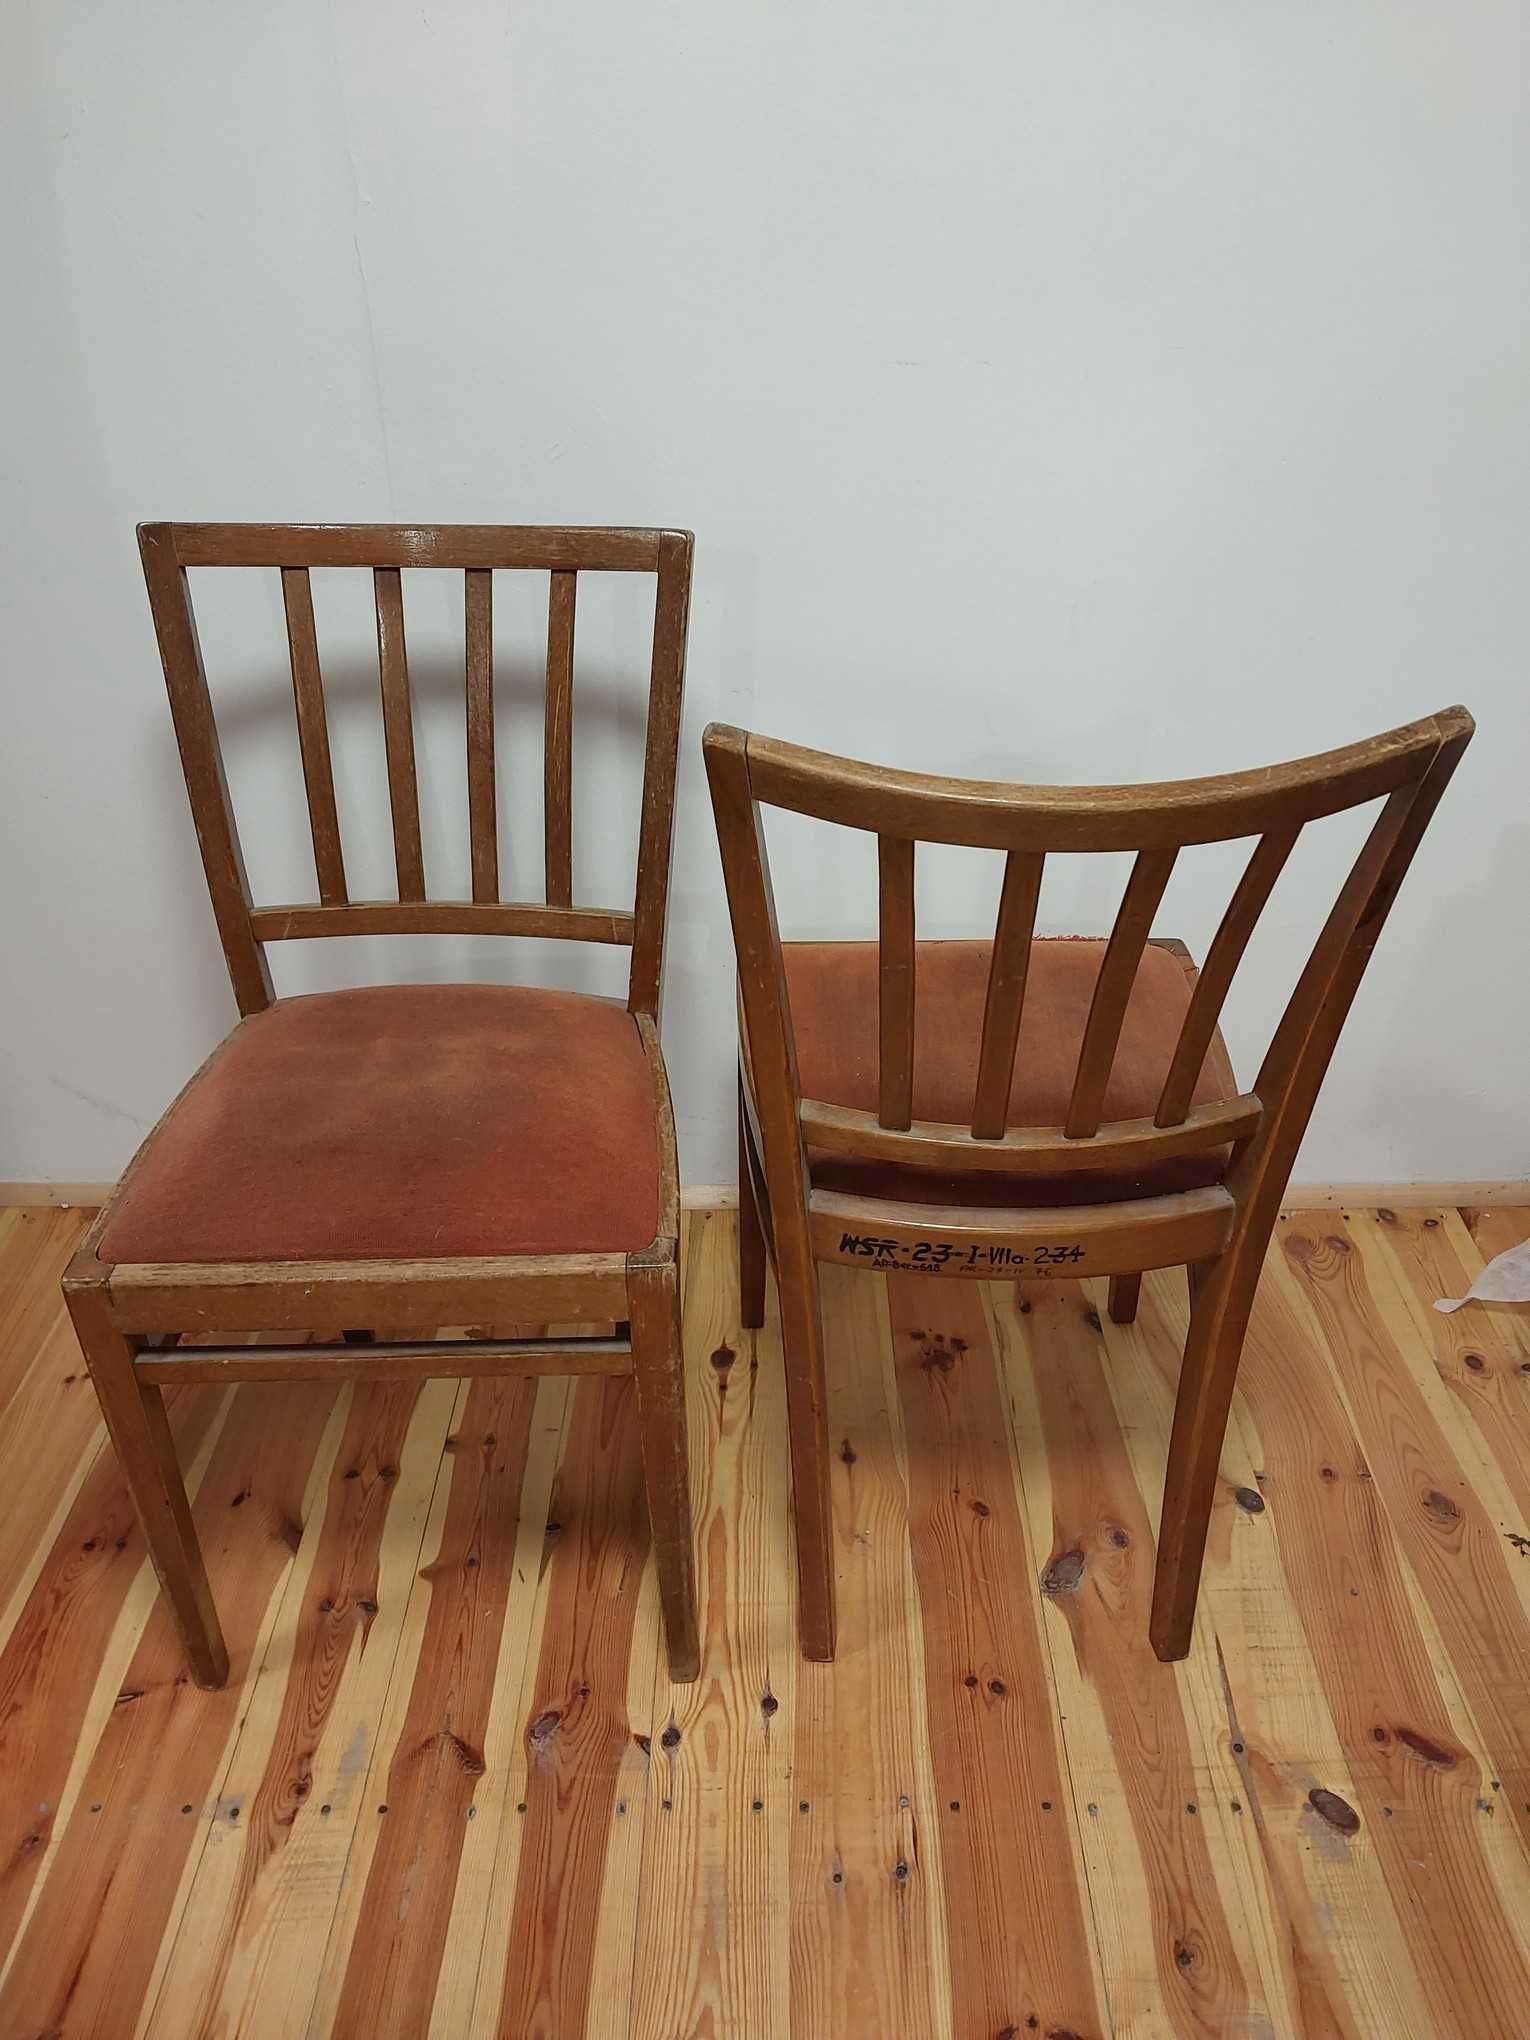 krzesła z PRL vintage lite drewno